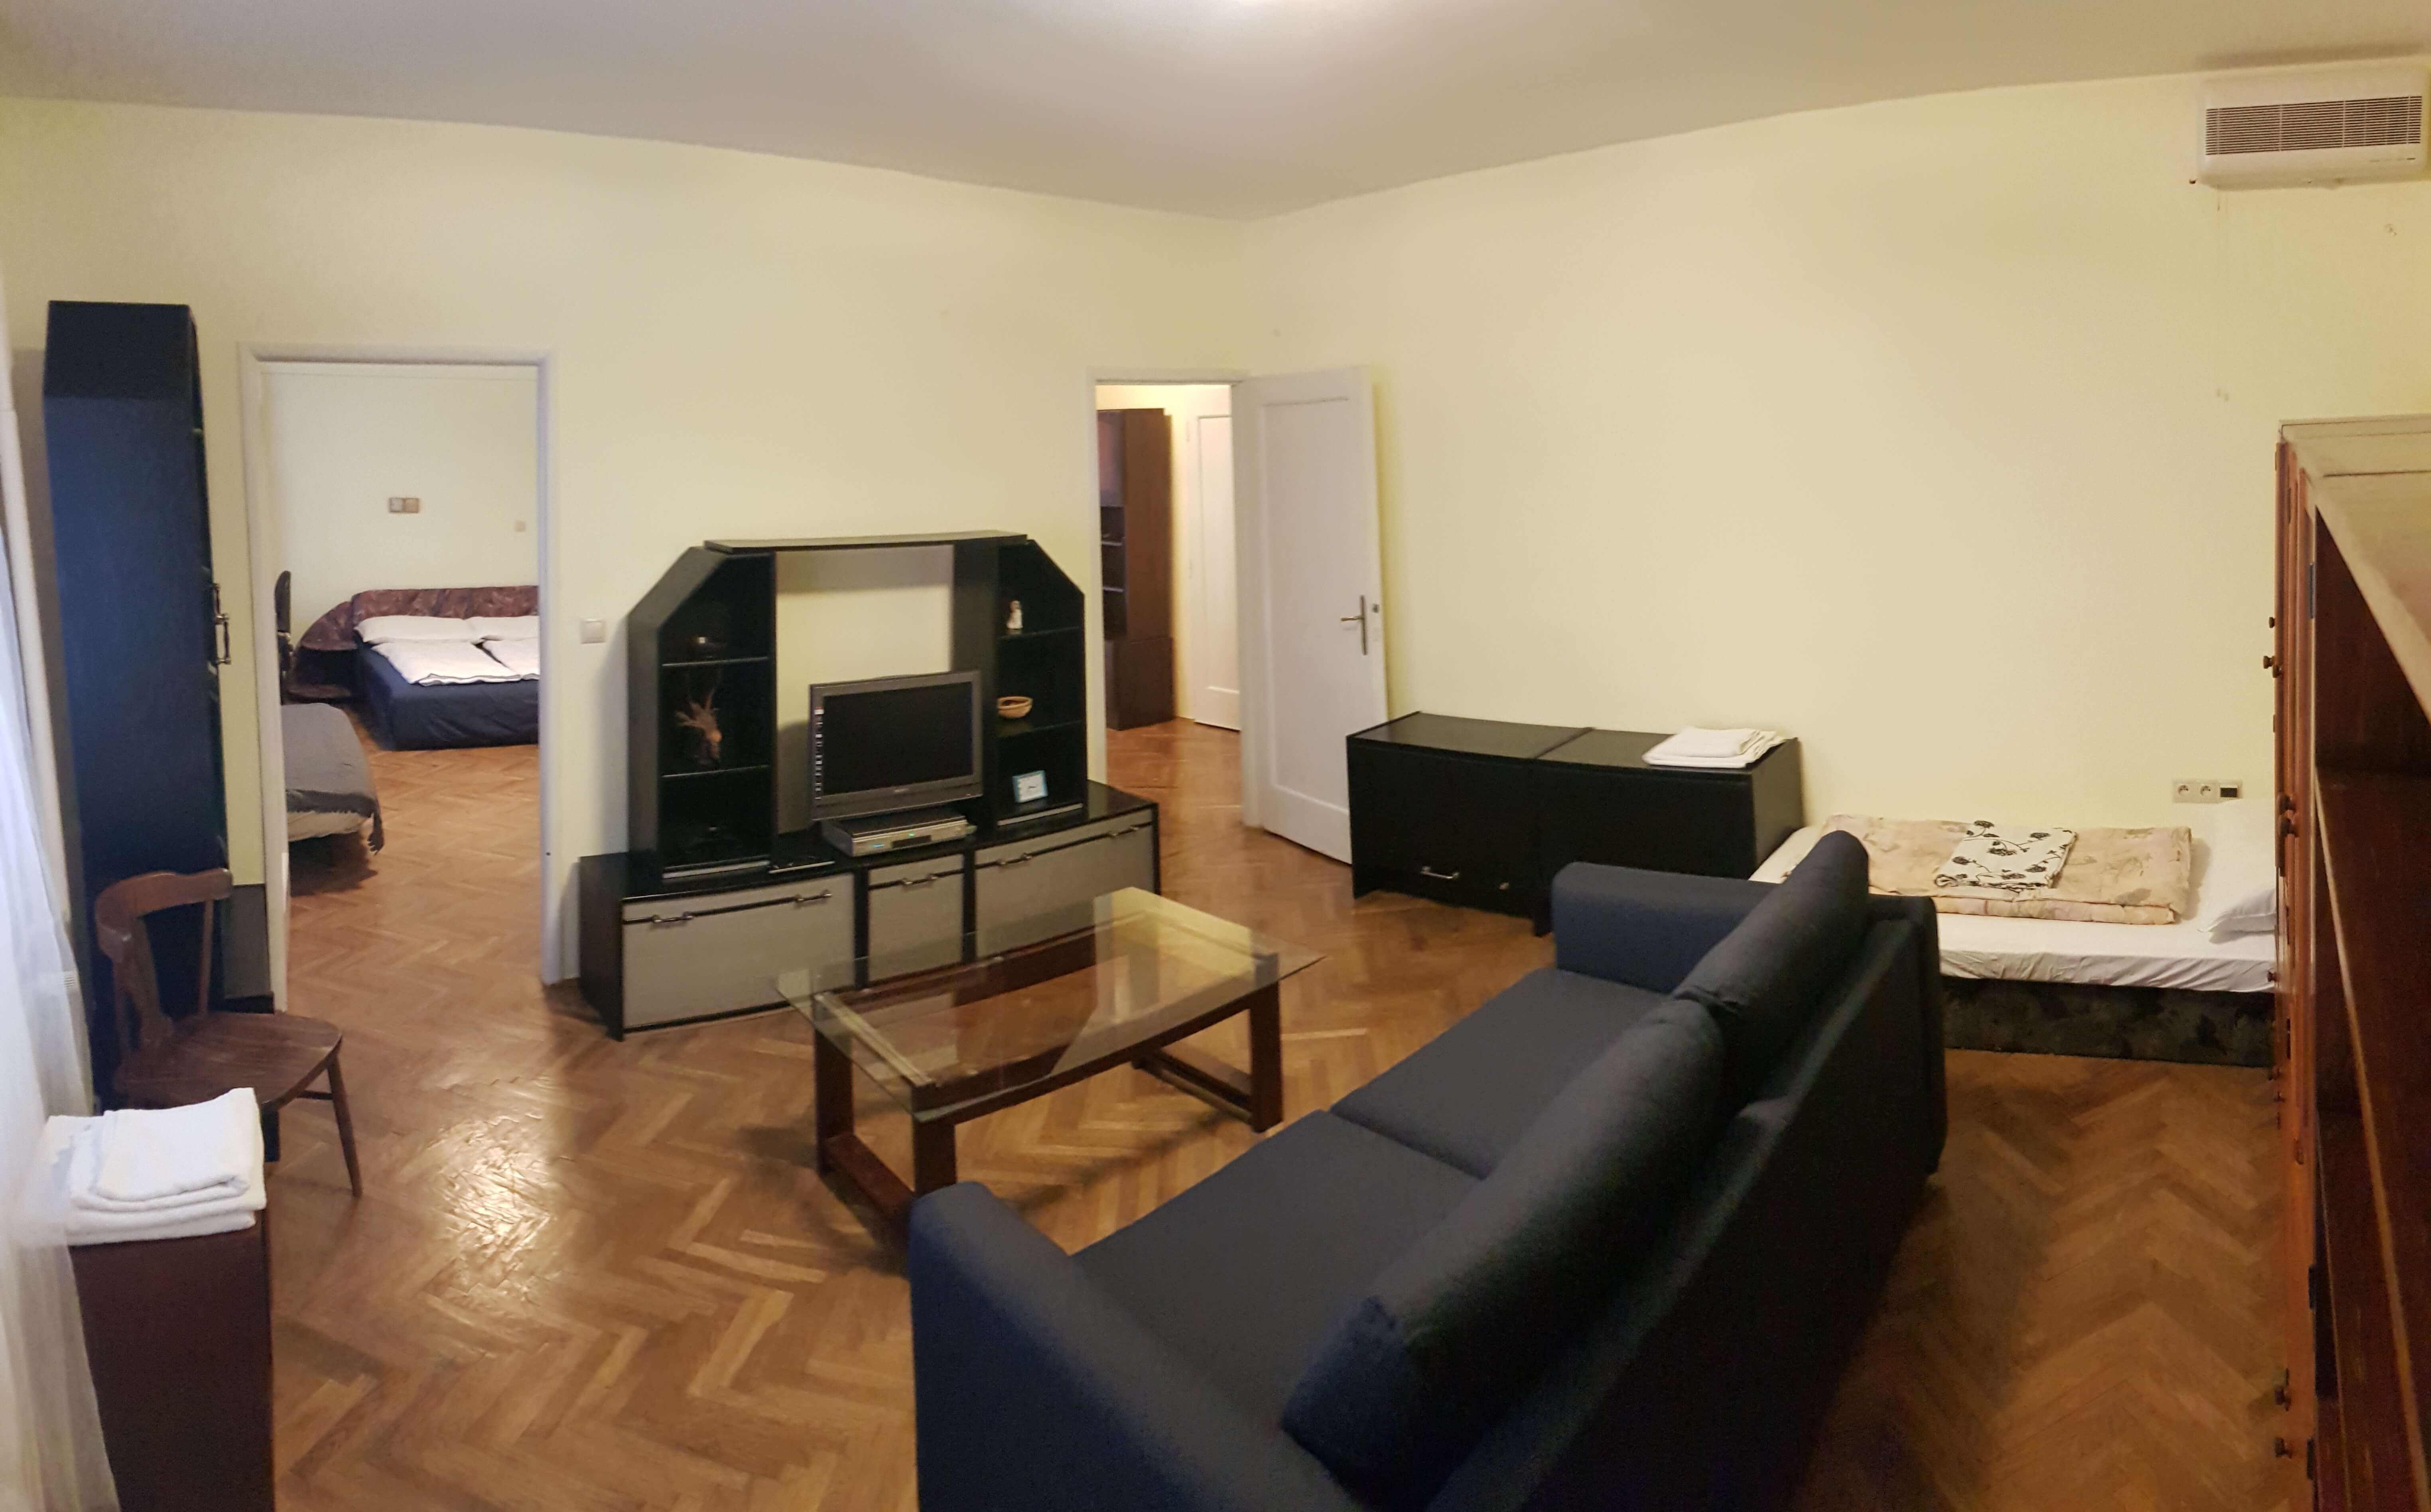 Prenajaté: Prenájom jednej izby v 2 izb. byte, staré mesto, Šancová ulica, Bratislava, 80m2, zariadený-0